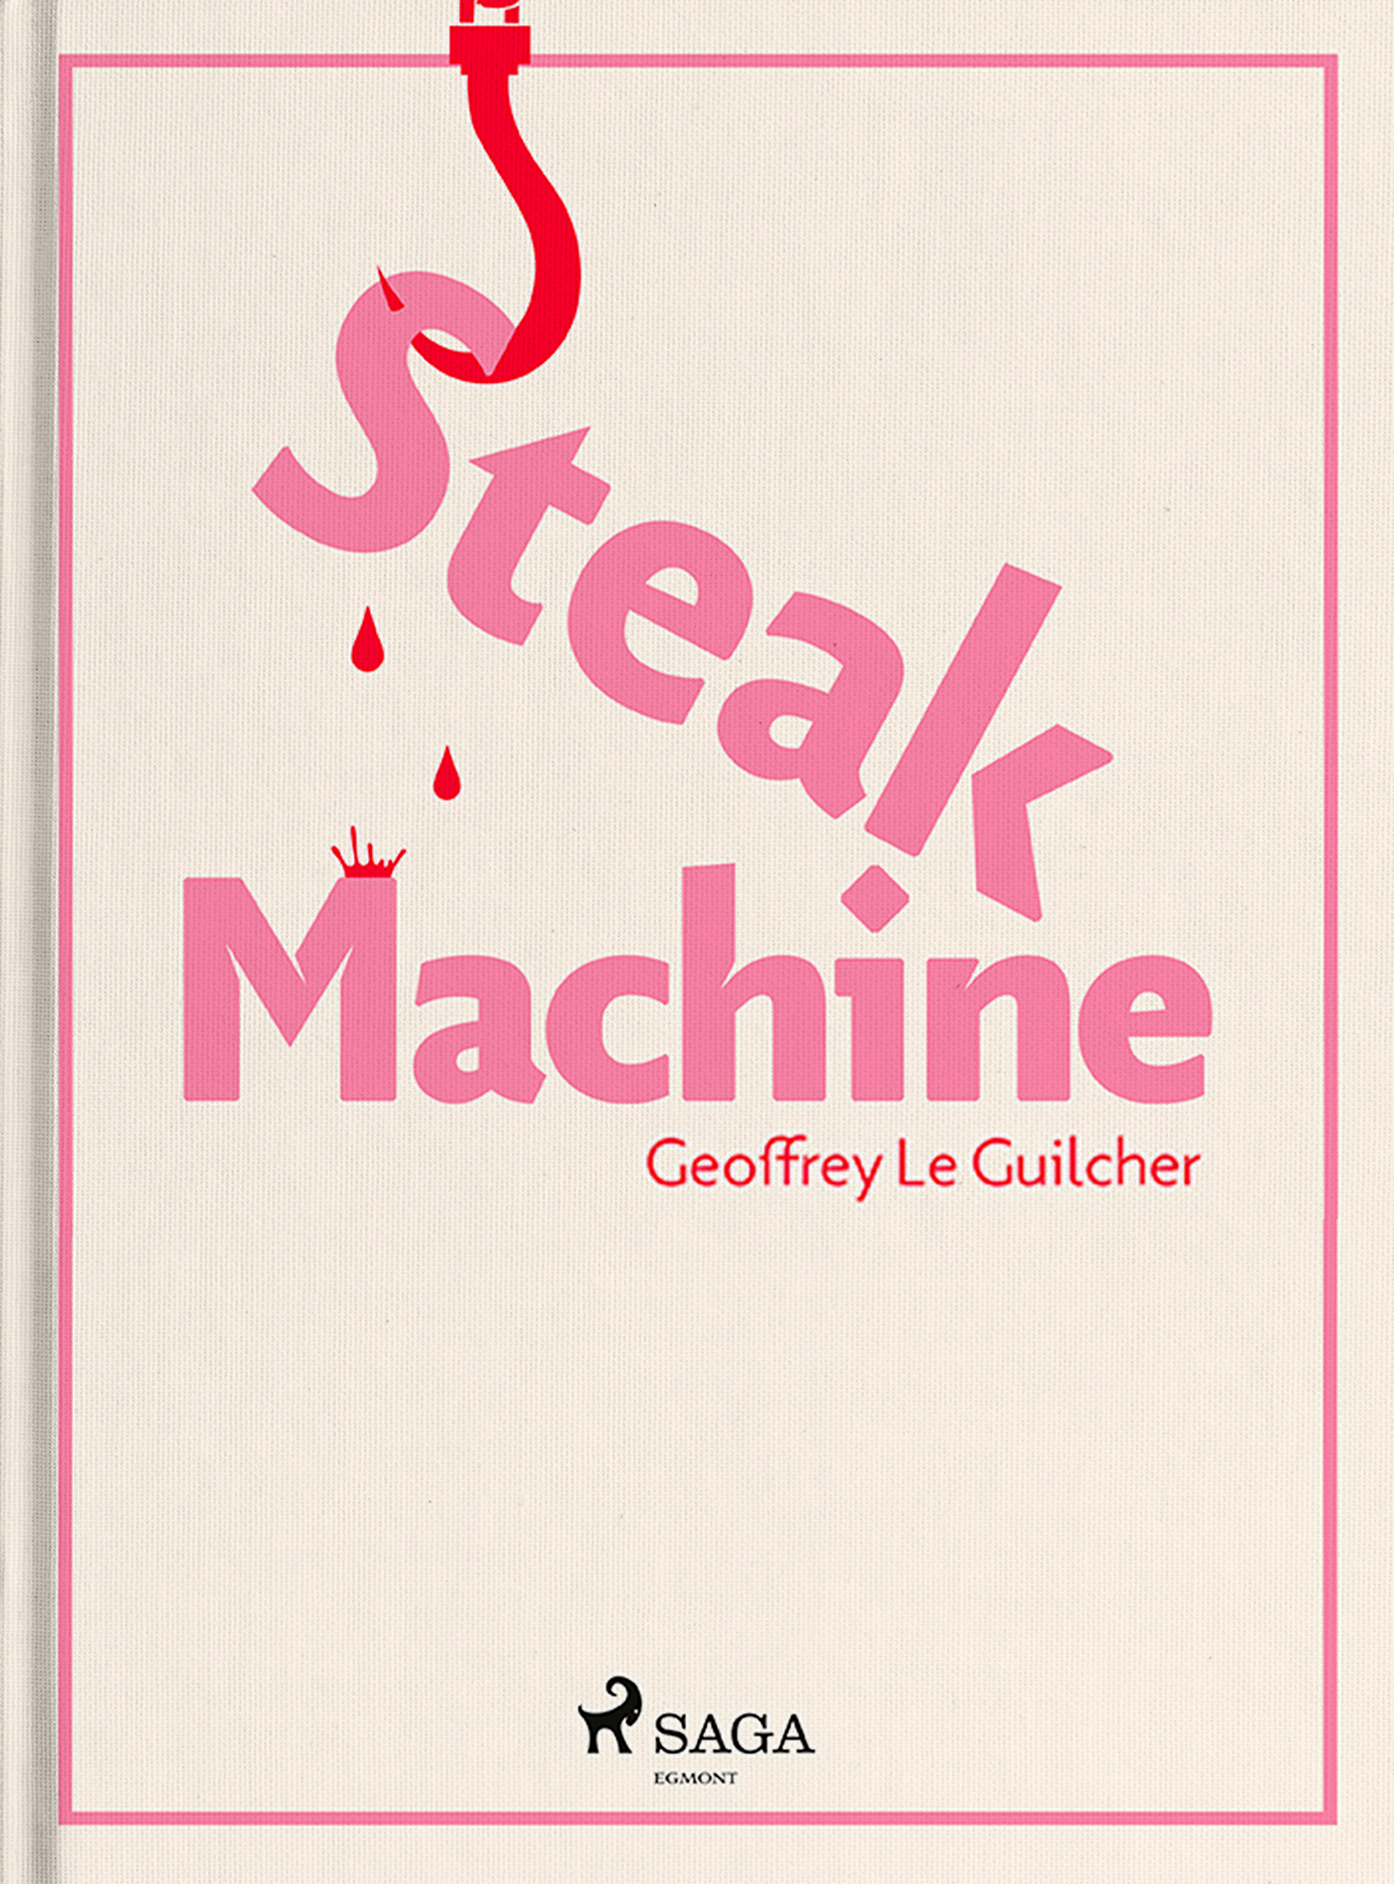 Steak machine